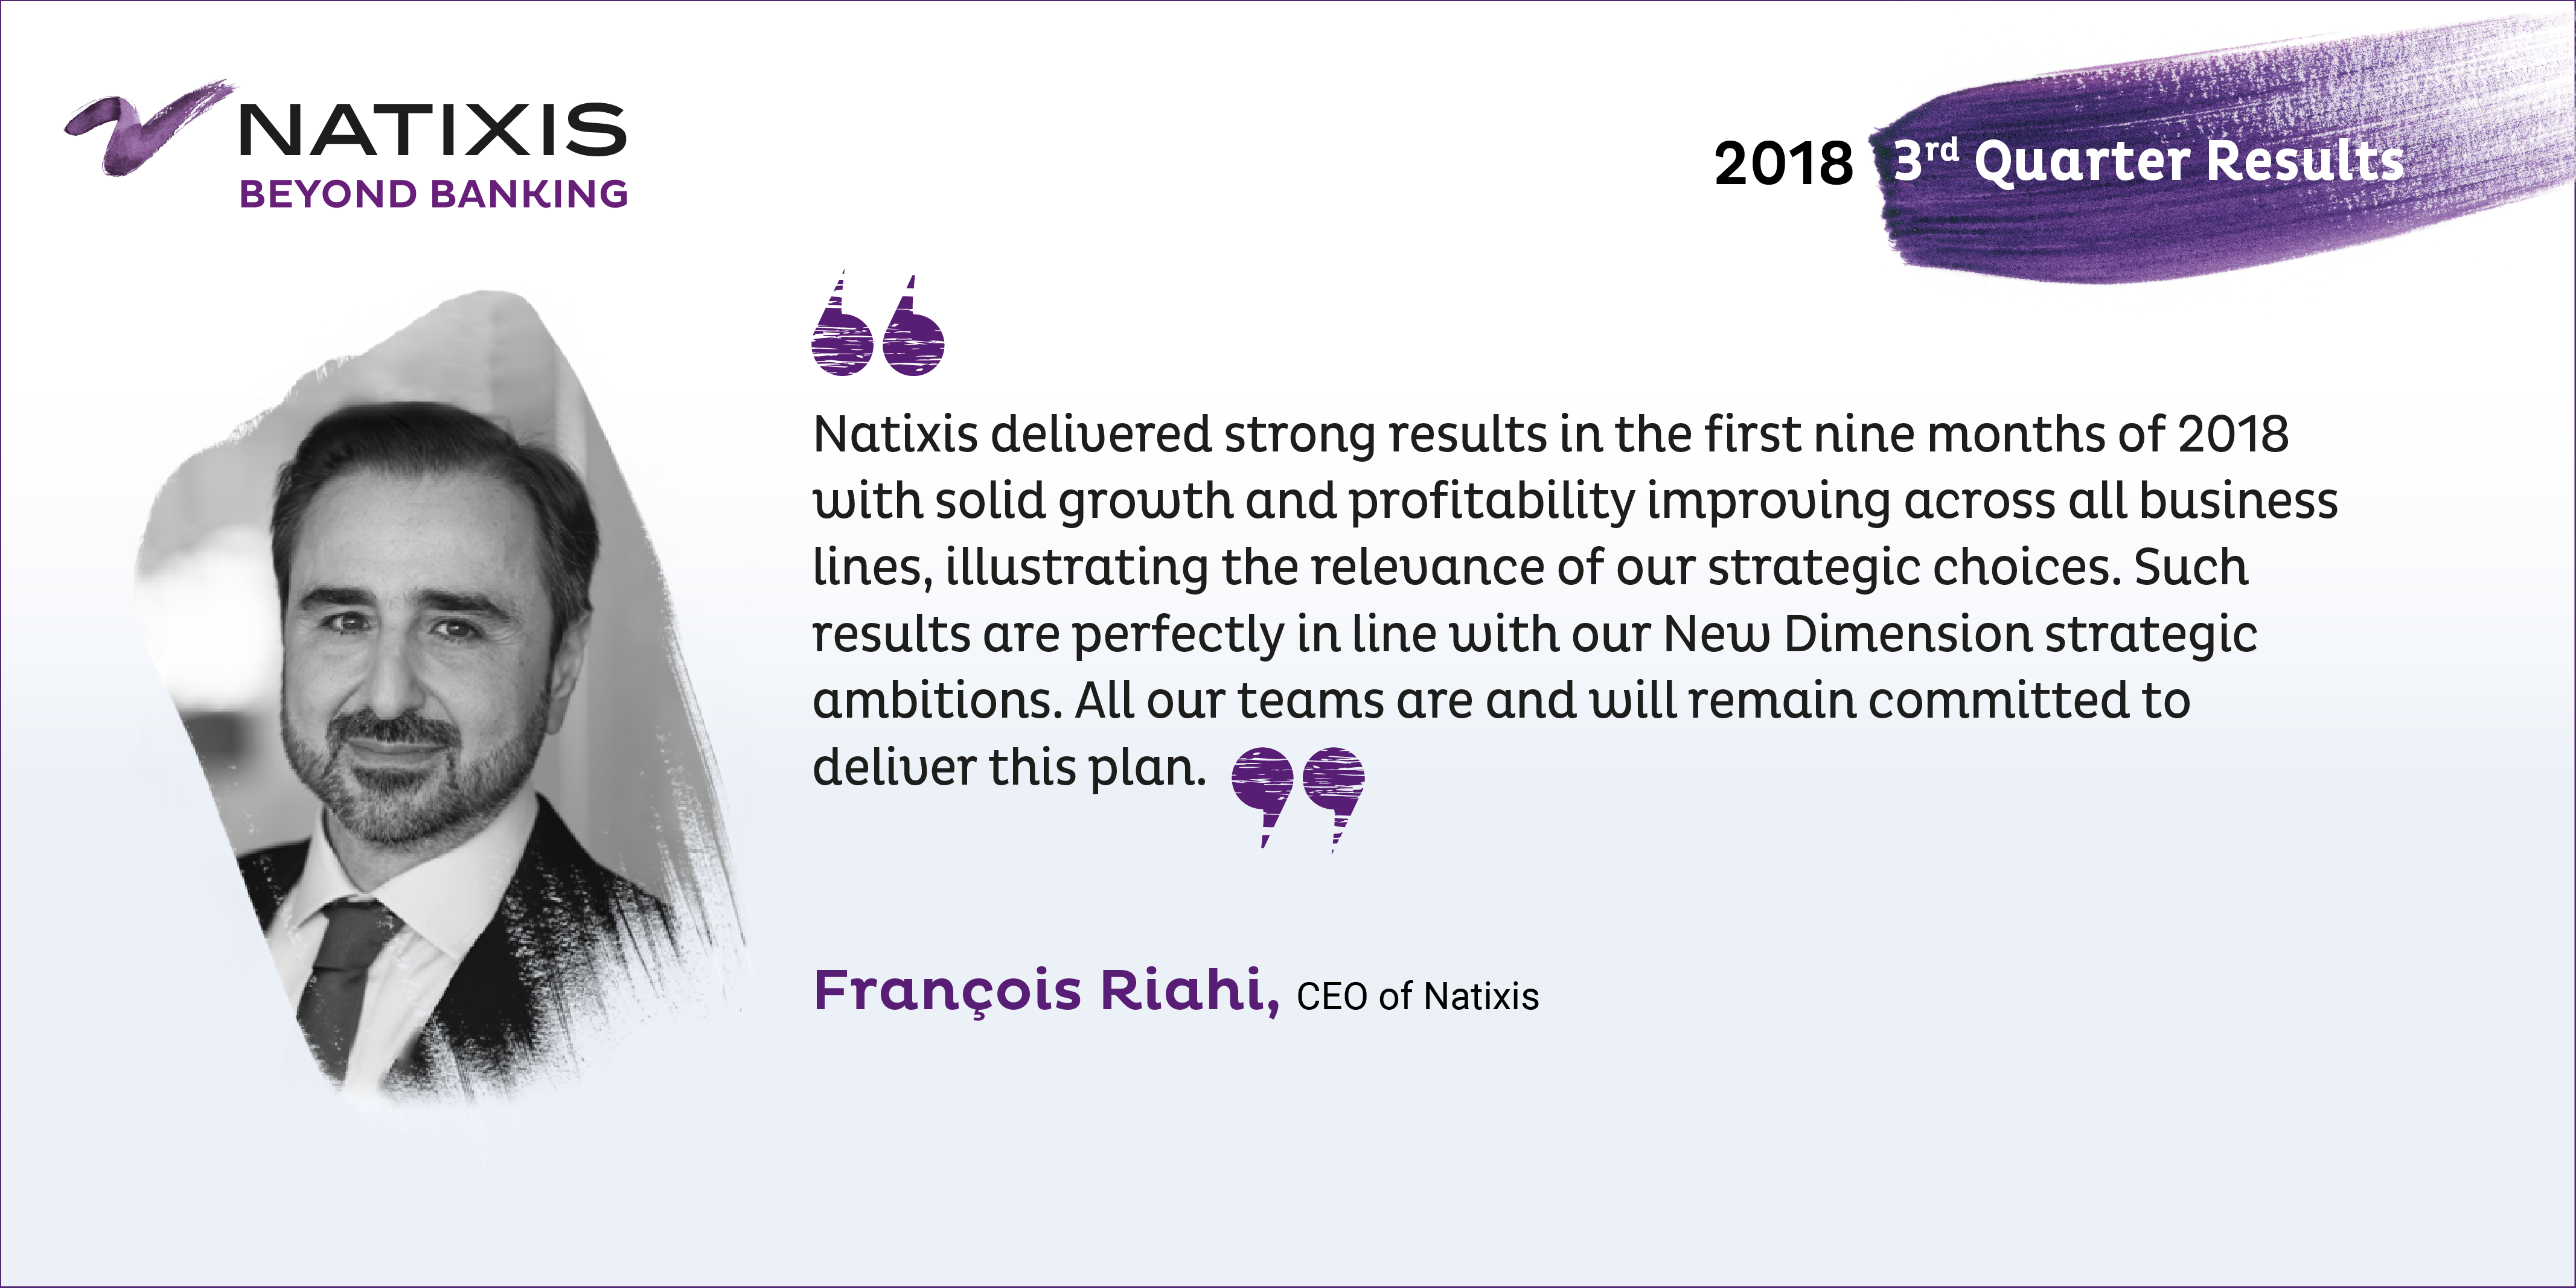 Natixis - Francois Riahi - 2018 3rd Quarter Results